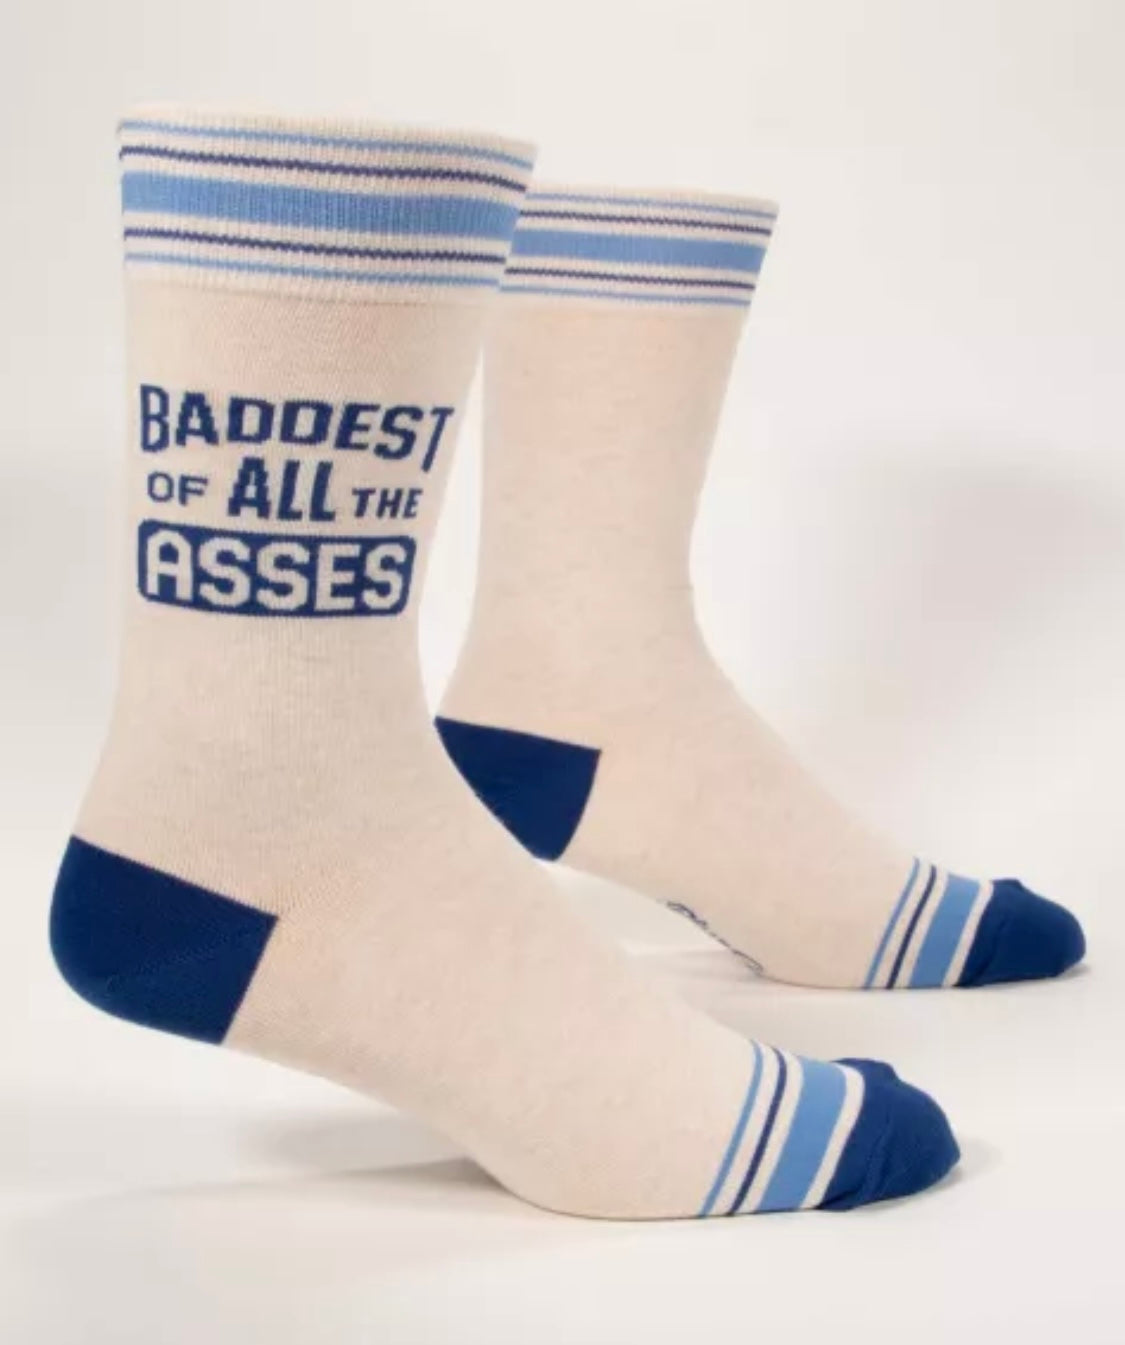 Baddest of All Asses Men's Crew Novelty Blue Q Socks